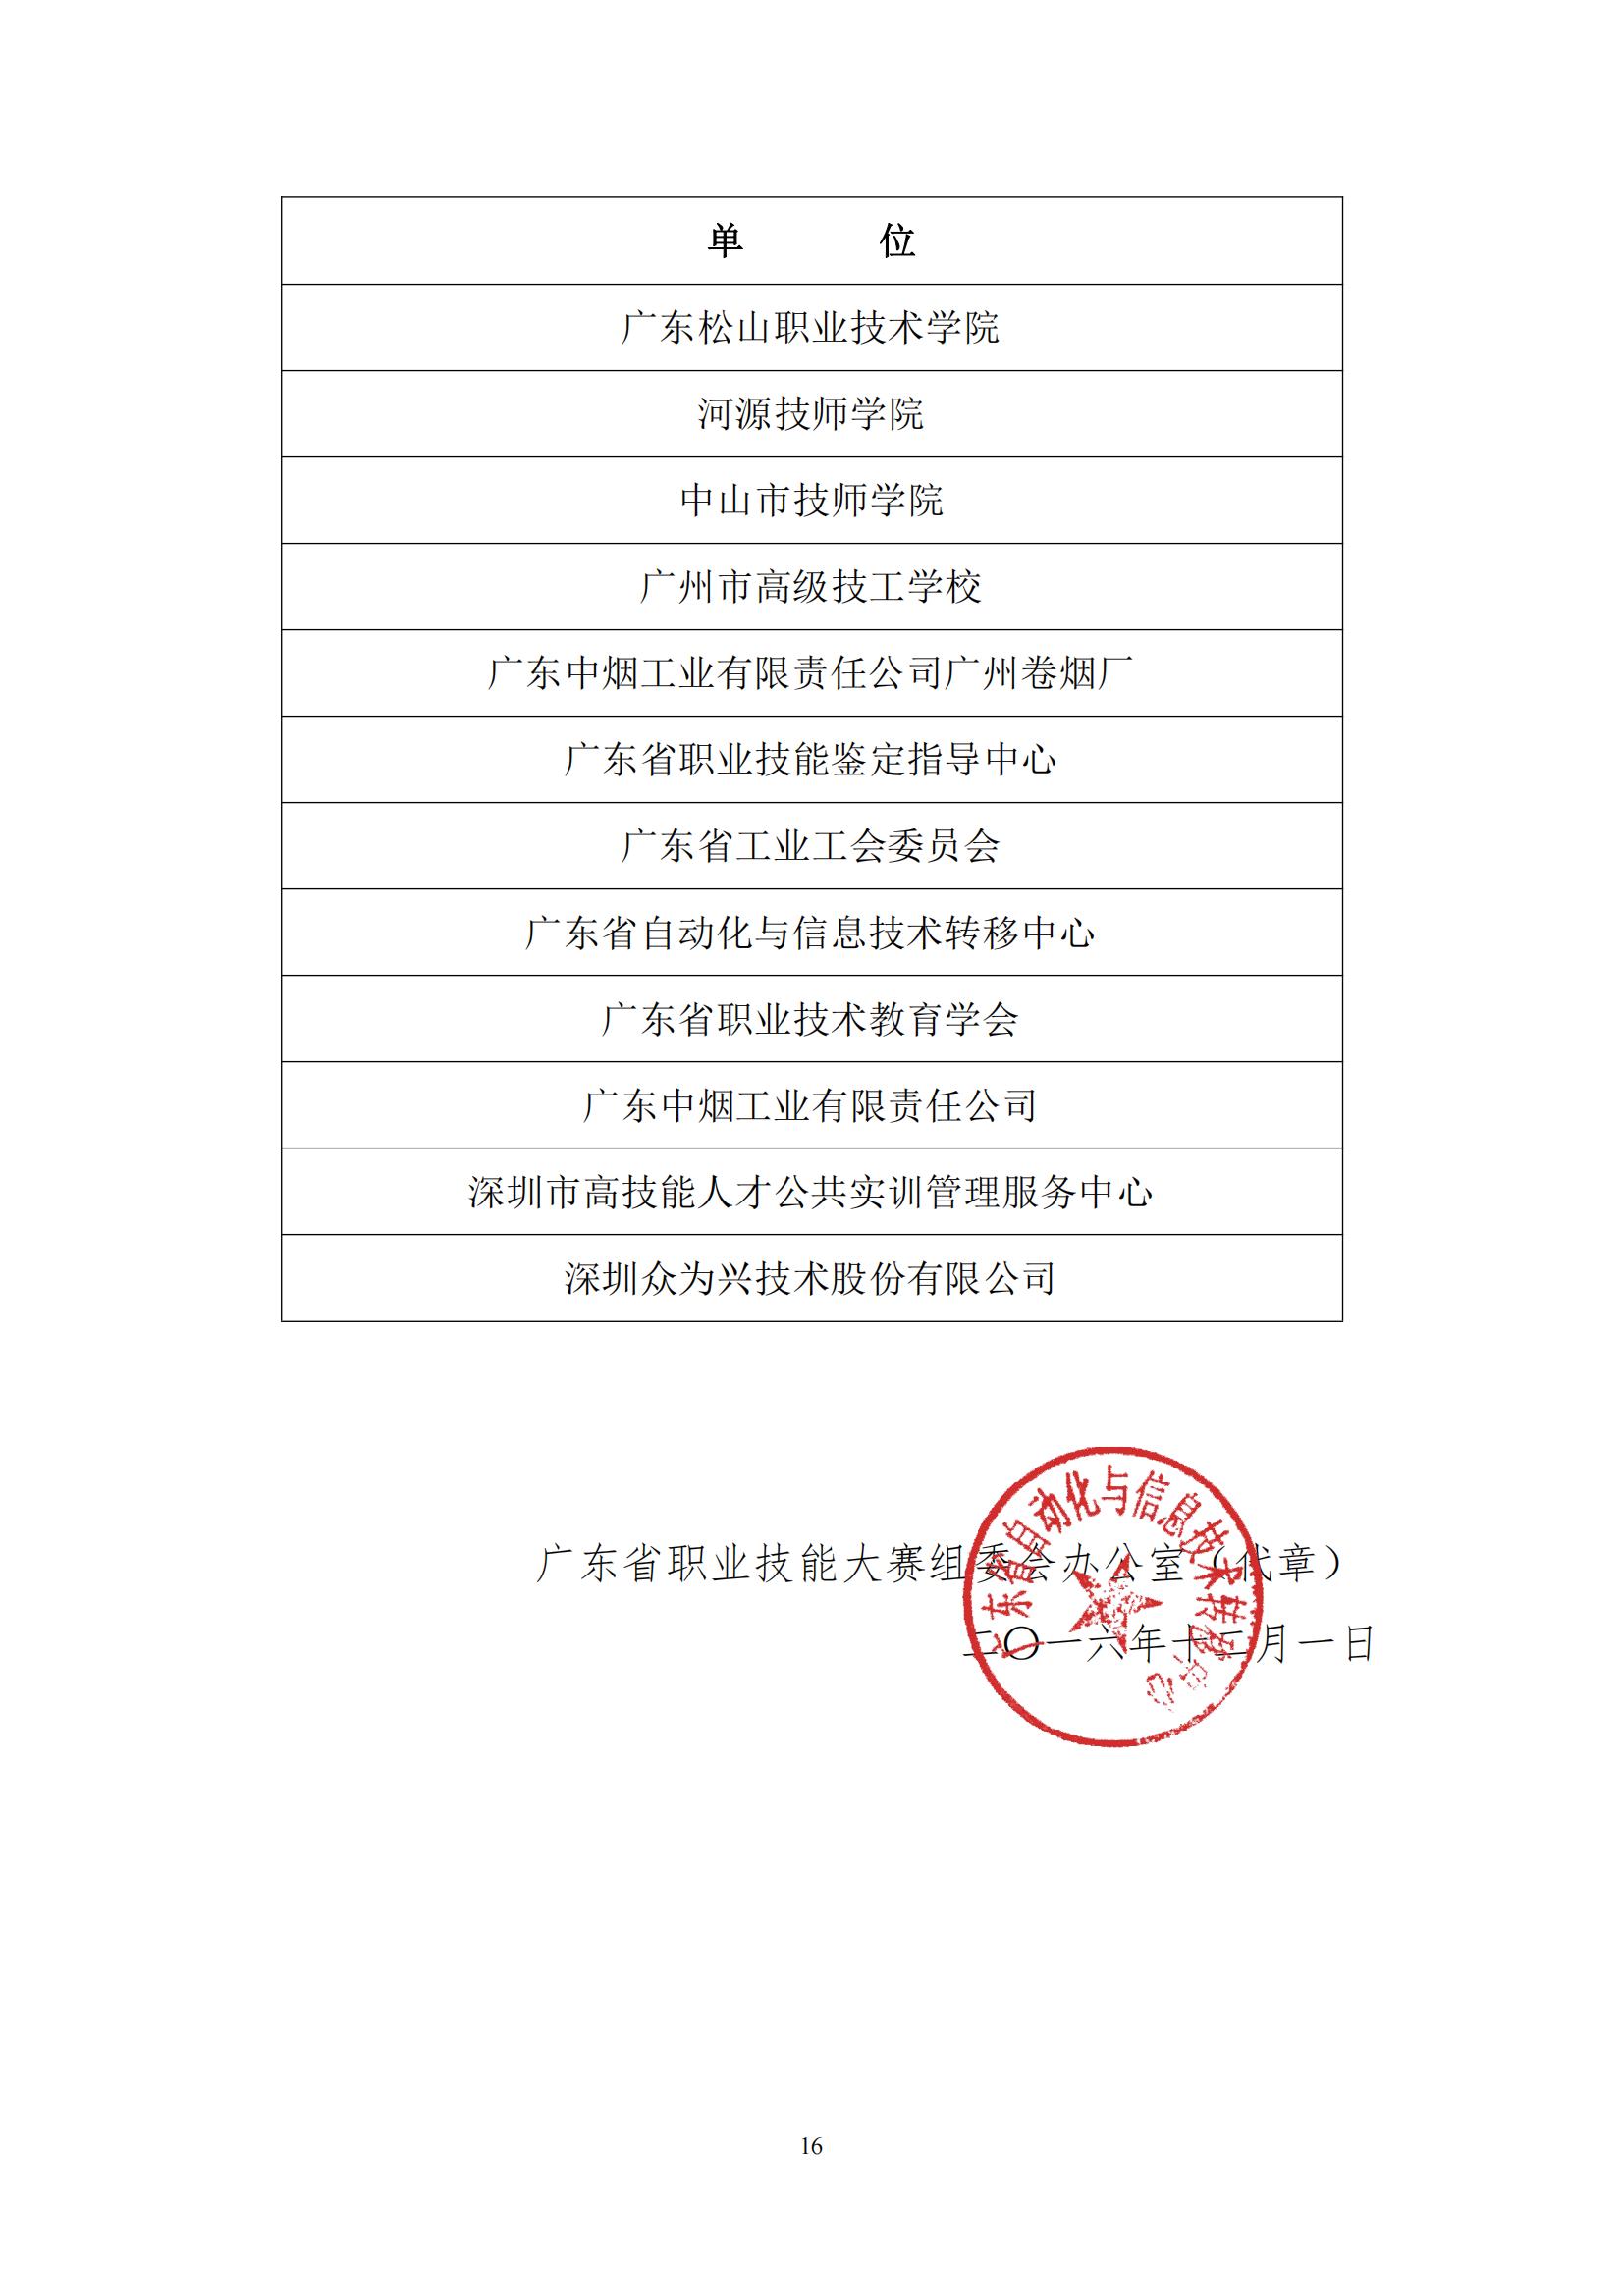 2016 年中国技能大赛——广东省可编程序控制系统设计师（工业机器人技术应用）职业技能竞赛_15.jpg